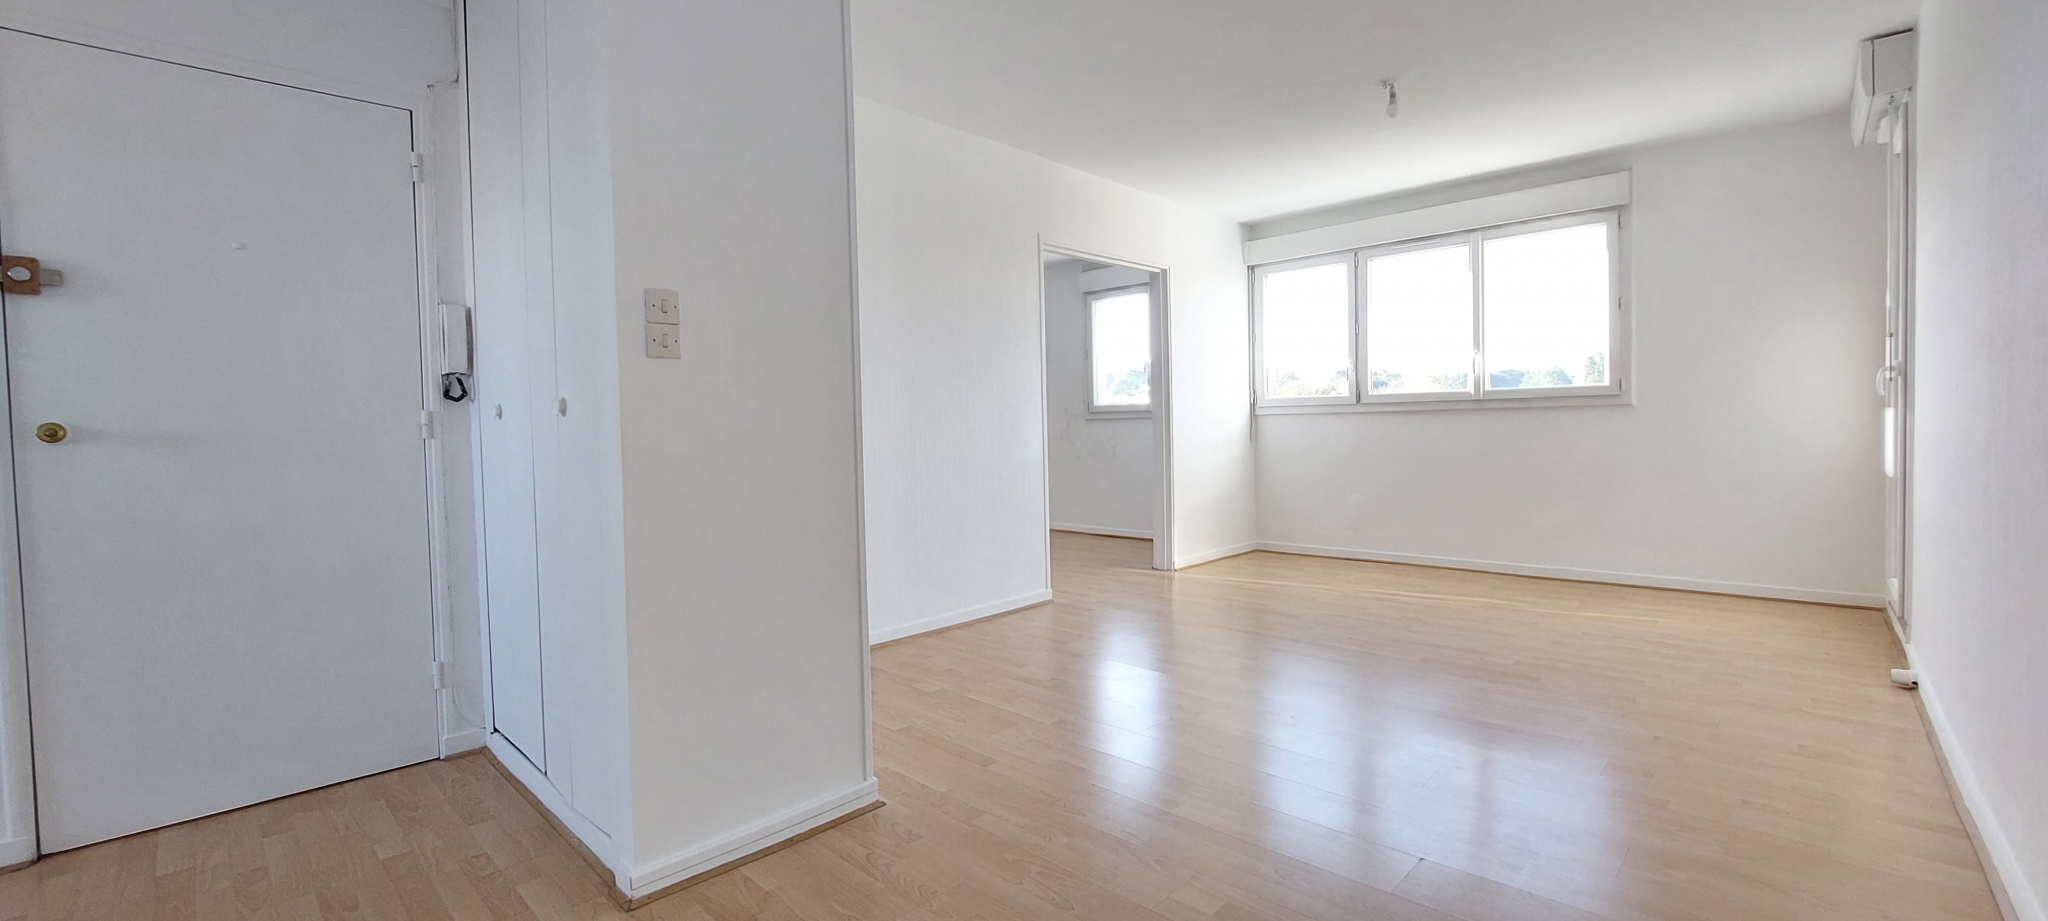 Vente Appartement 70m² 4 Pièces à Mérignac (33700) - Agence Immobilier Dubois